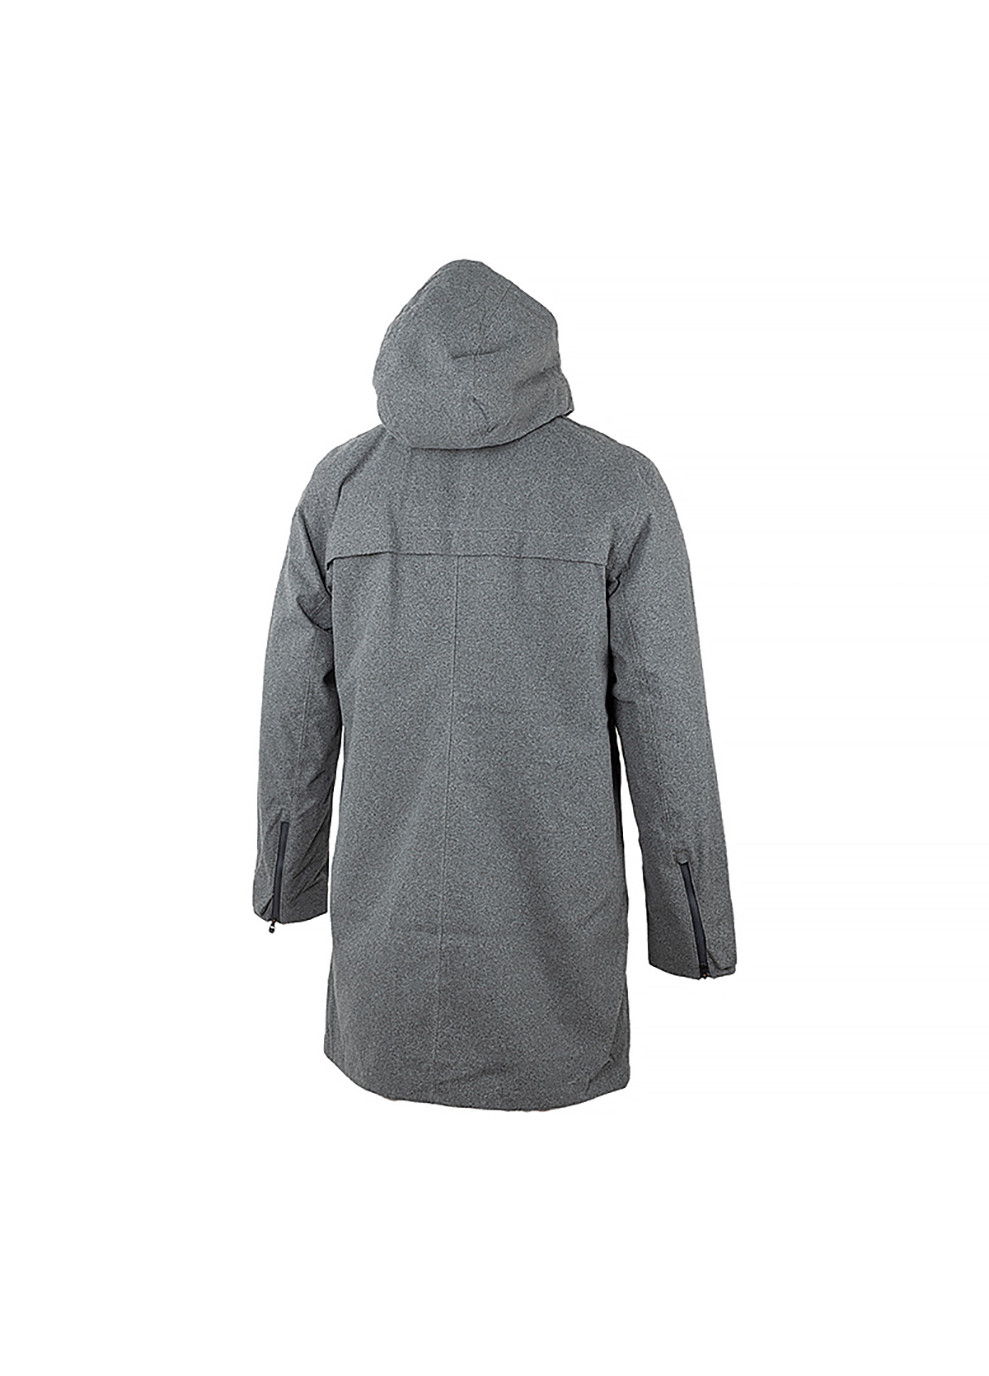 Серая демисезонная мужская куртка urb lab helsinki 3-in-1 coat серый l (53850-964 l) Helly Hansen